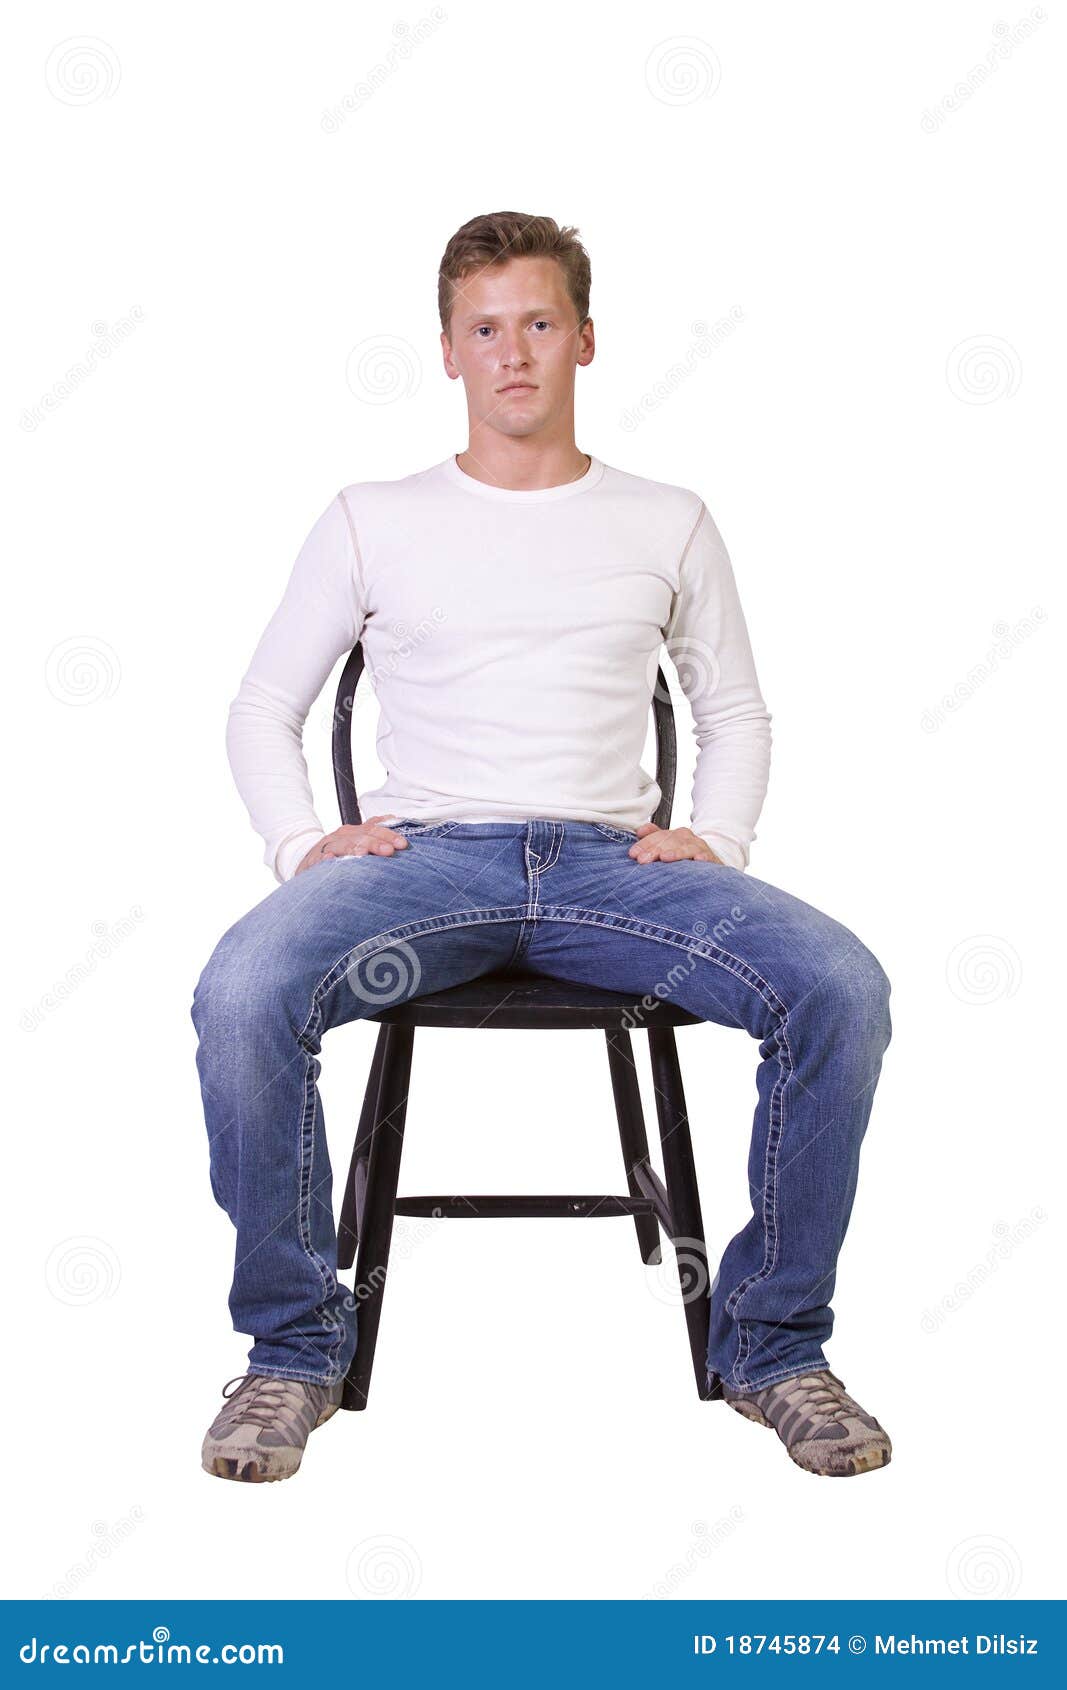 Мужчина сидит расставив ноги. Человек на стуле. Человек сидит на стуле. Сидячий человек. Человек на стуле прямо.